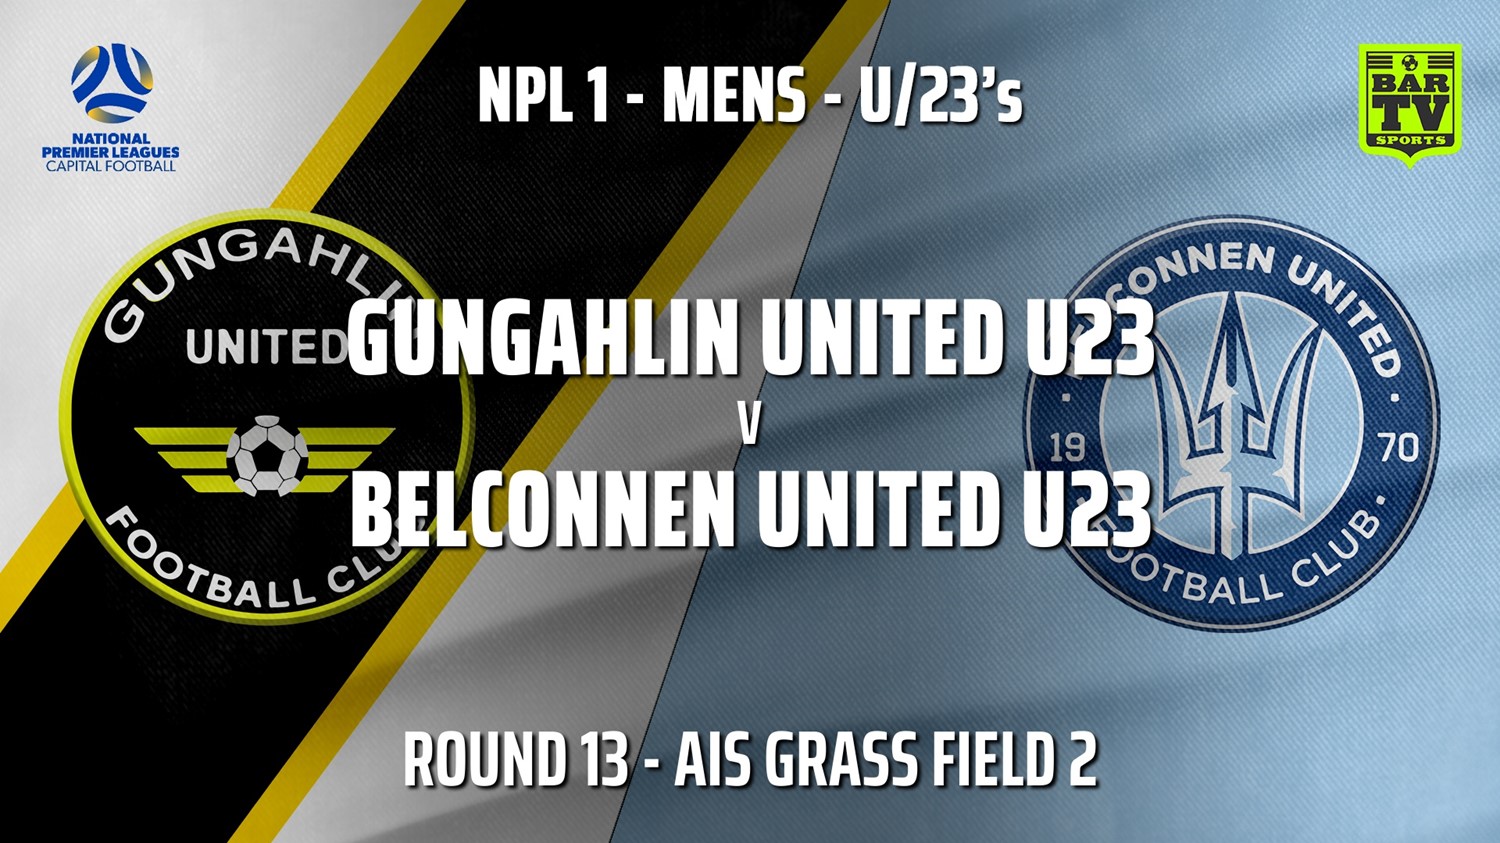 210711-Capital NPL U23 Round 13 - Gungahlin United U23 v Belconnen United U23 Minigame Slate Image